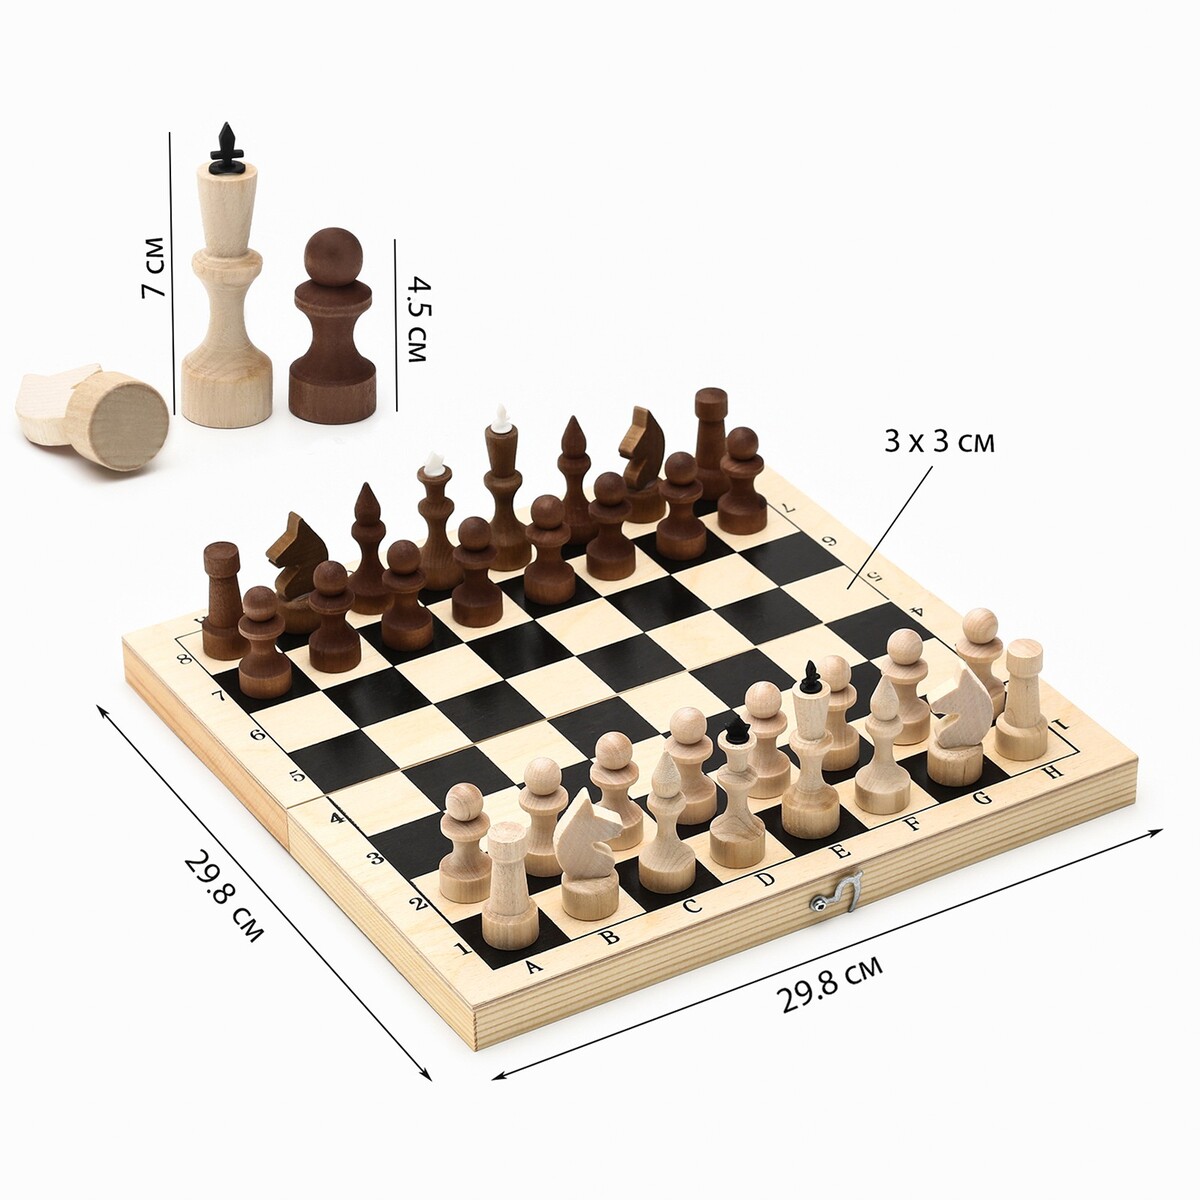 Шахматы деревянные обиходные 29.8 х 29.8 см, король h-7.2 см, пешка h-4.5 см шахматы деревянные 50 х 50 см